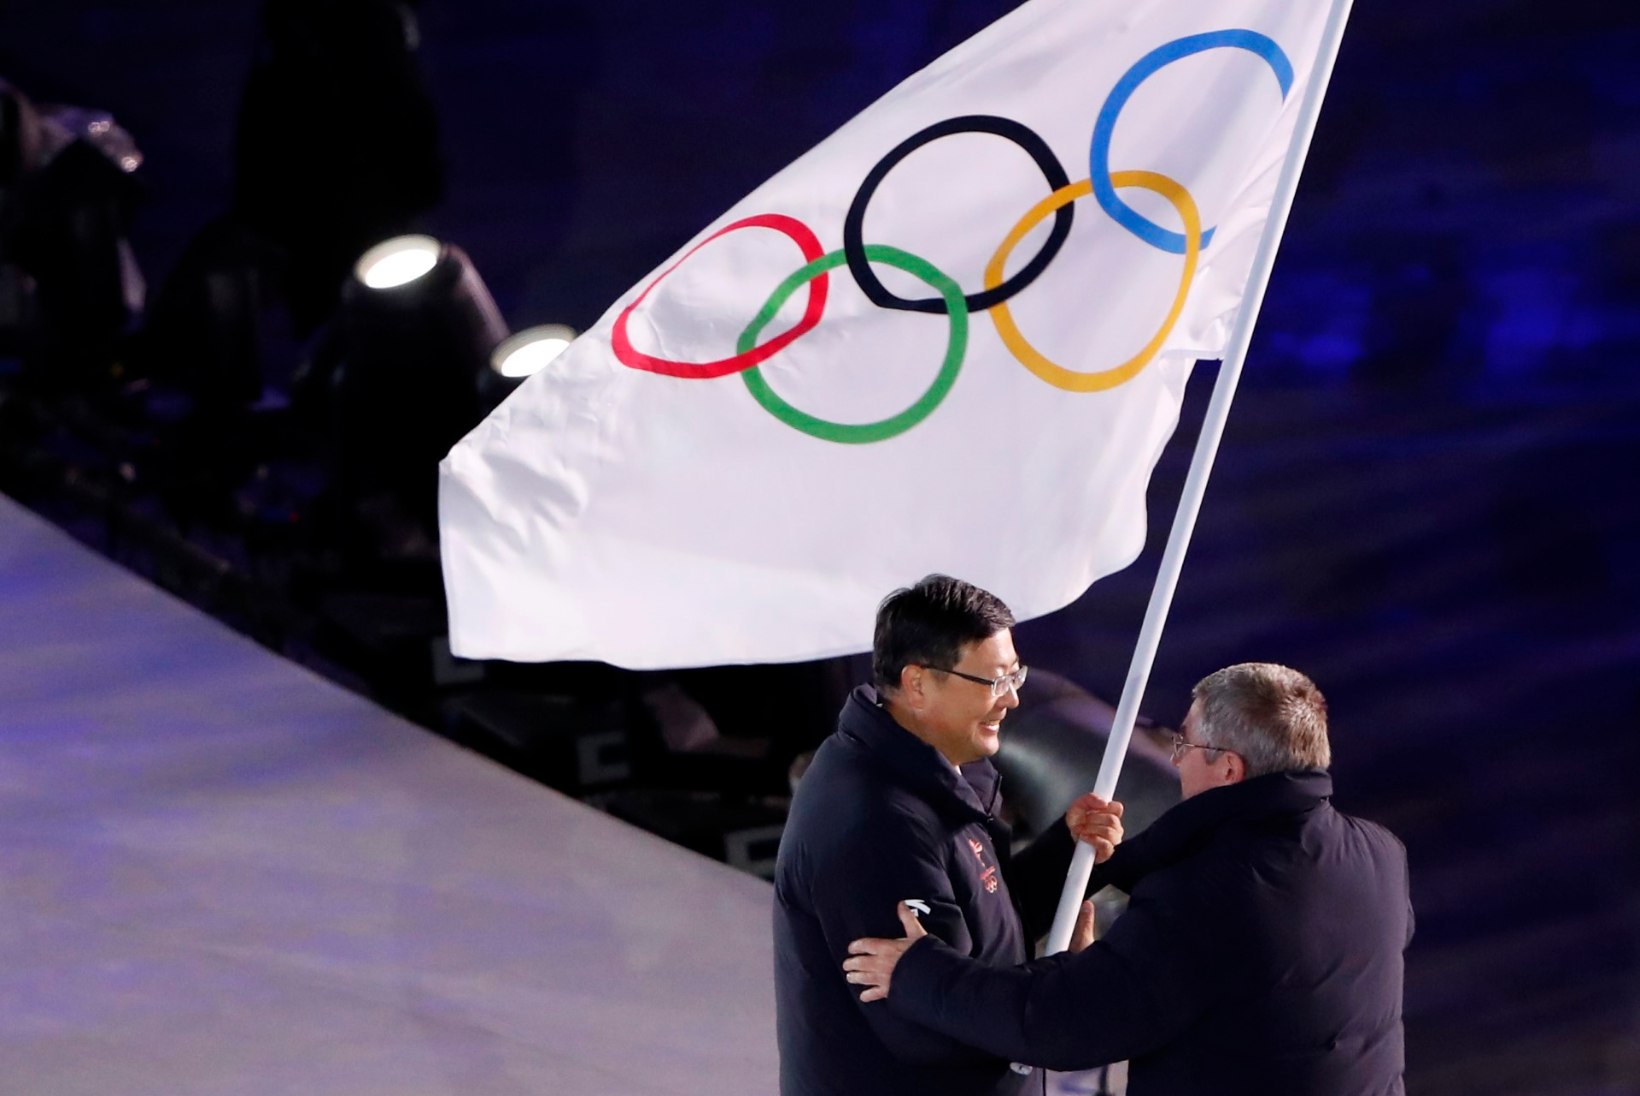 NII SEE JUHTUS | Sport 26.02: Pyeongchangi mängud on läbi. Millised on spordipeo järelkajad?